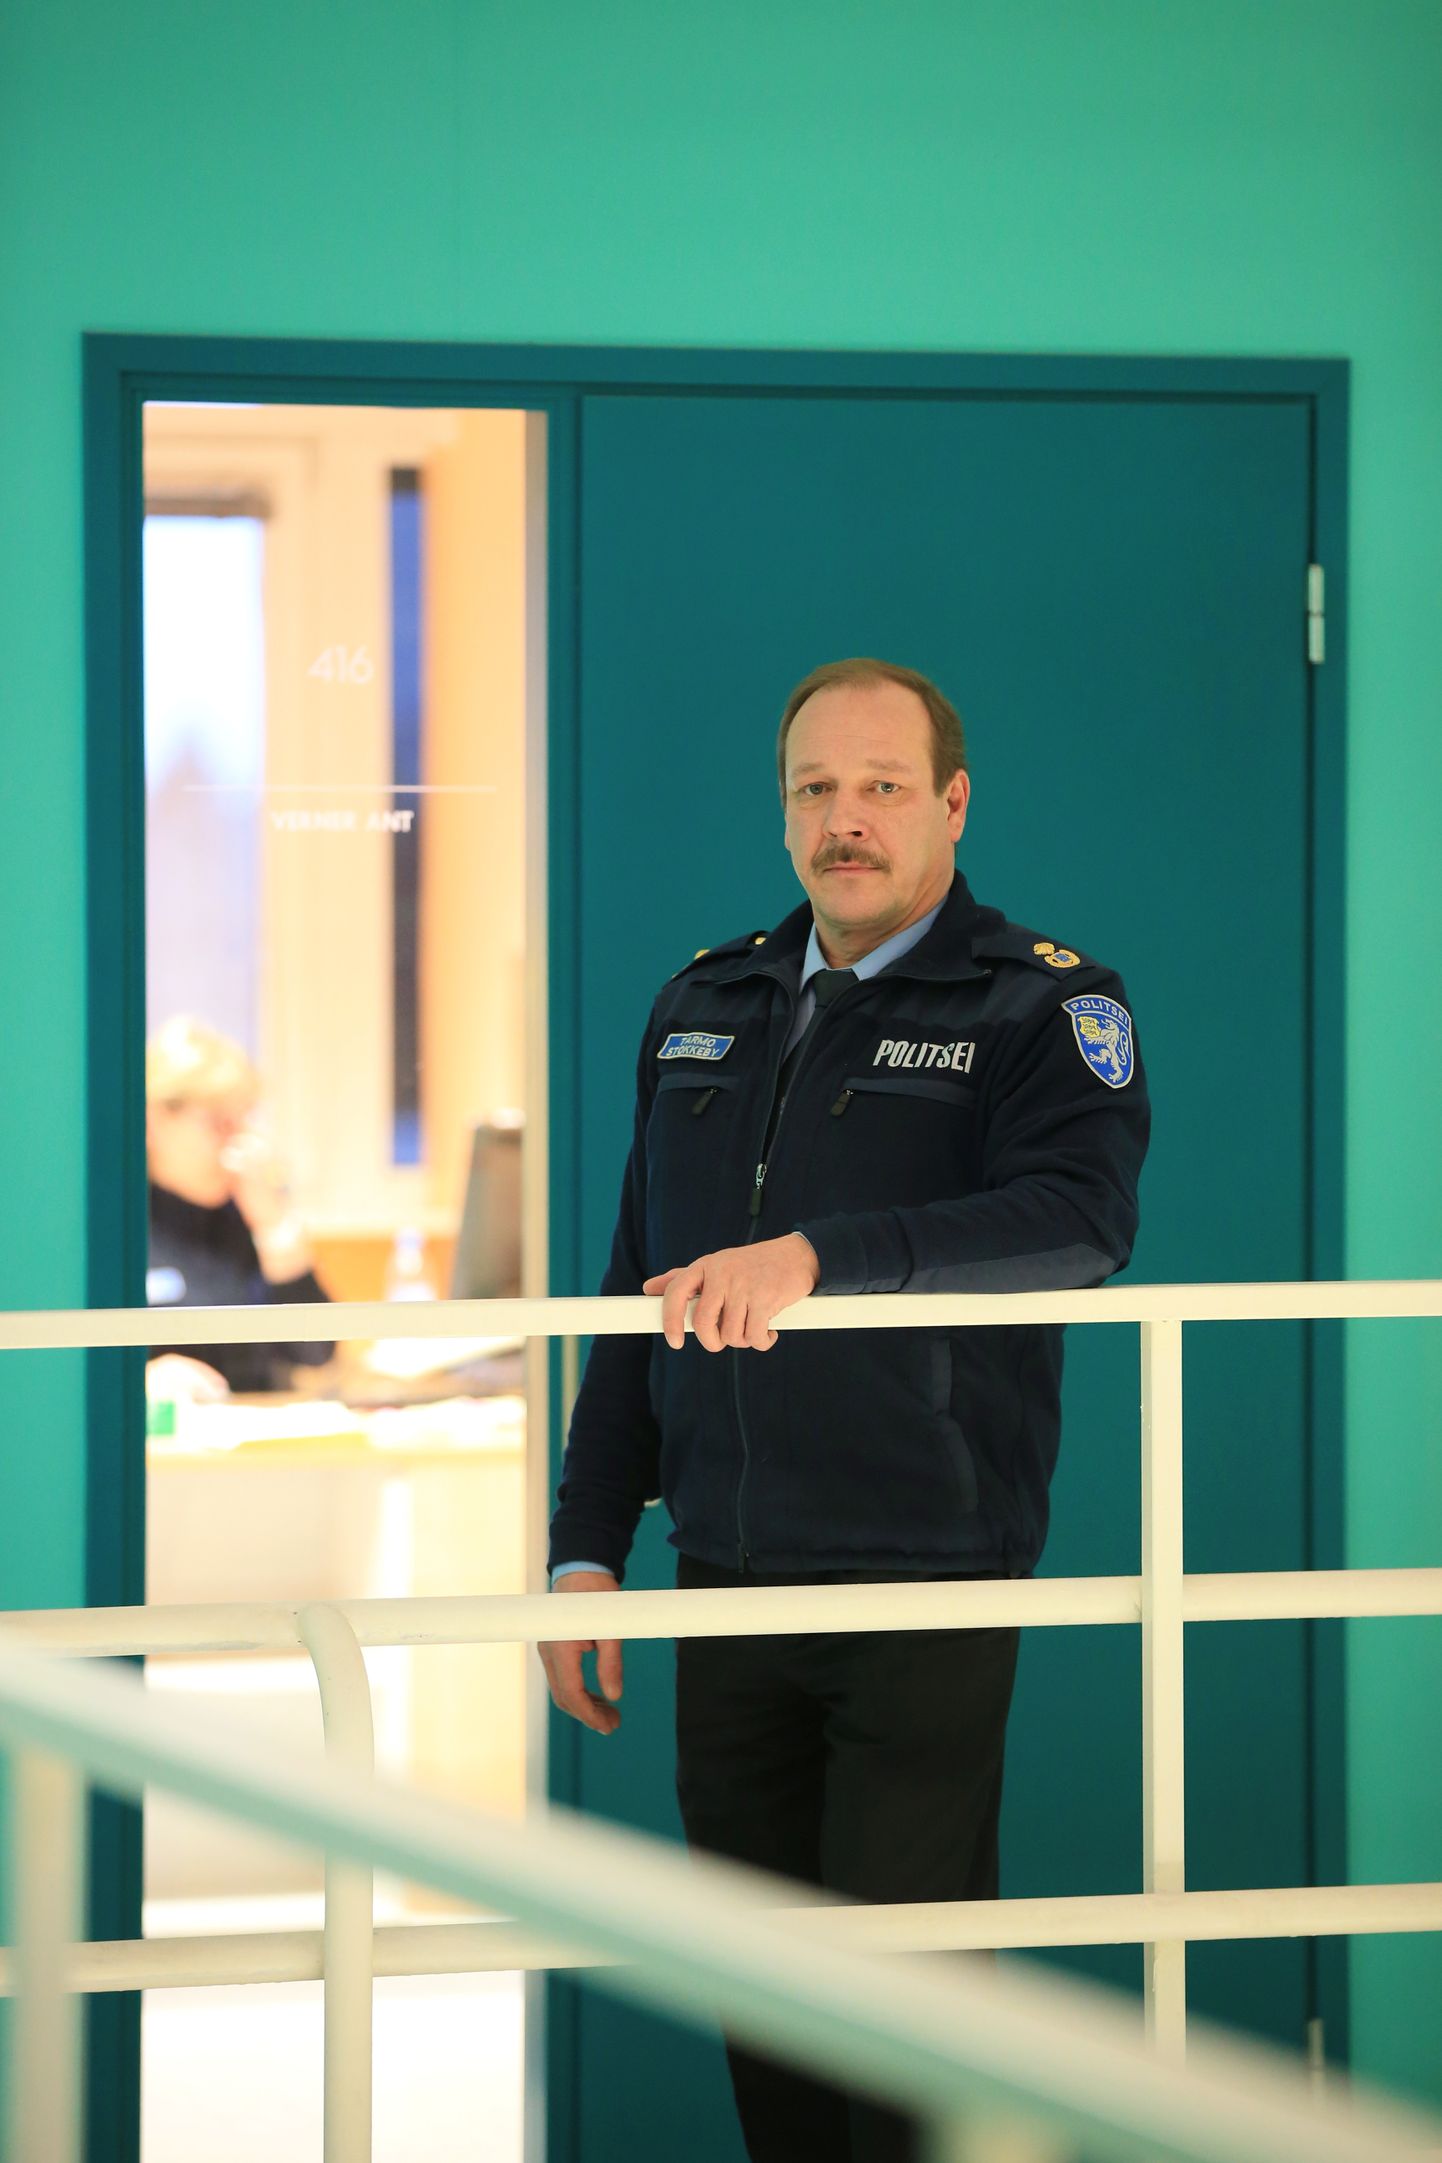 Tartu politseijaoskonna piirkonnavanema Tarmo Stokkeby sõnutsi on politsei saanud mõningaid vihjeid ebaseadusliku alkoholimüügi kohta, millest omakorda teavitab politsei maksu- ja tolliametit.